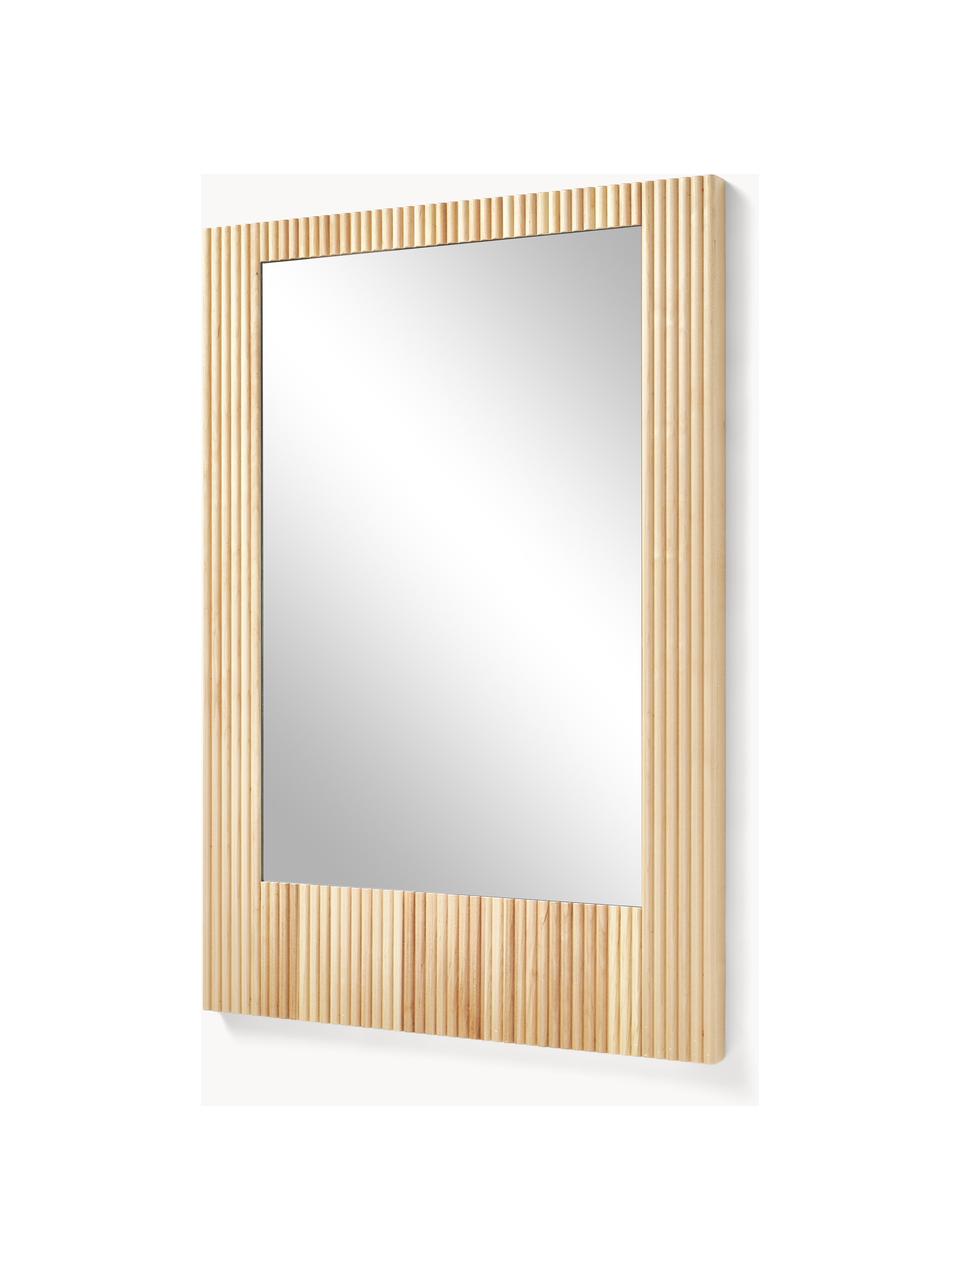 Nástěnné zrcadlo s rámem z žebrovaného březového dřeva Nele, Březové dřevo, Š 70 cm, V 100 cm